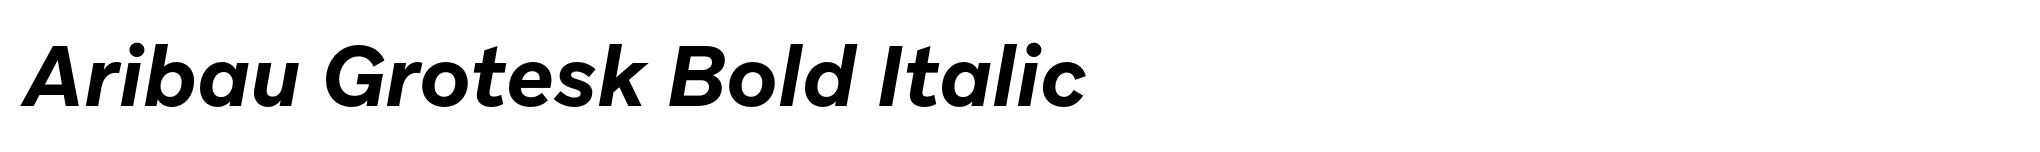 Aribau Grotesk Bold Italic image